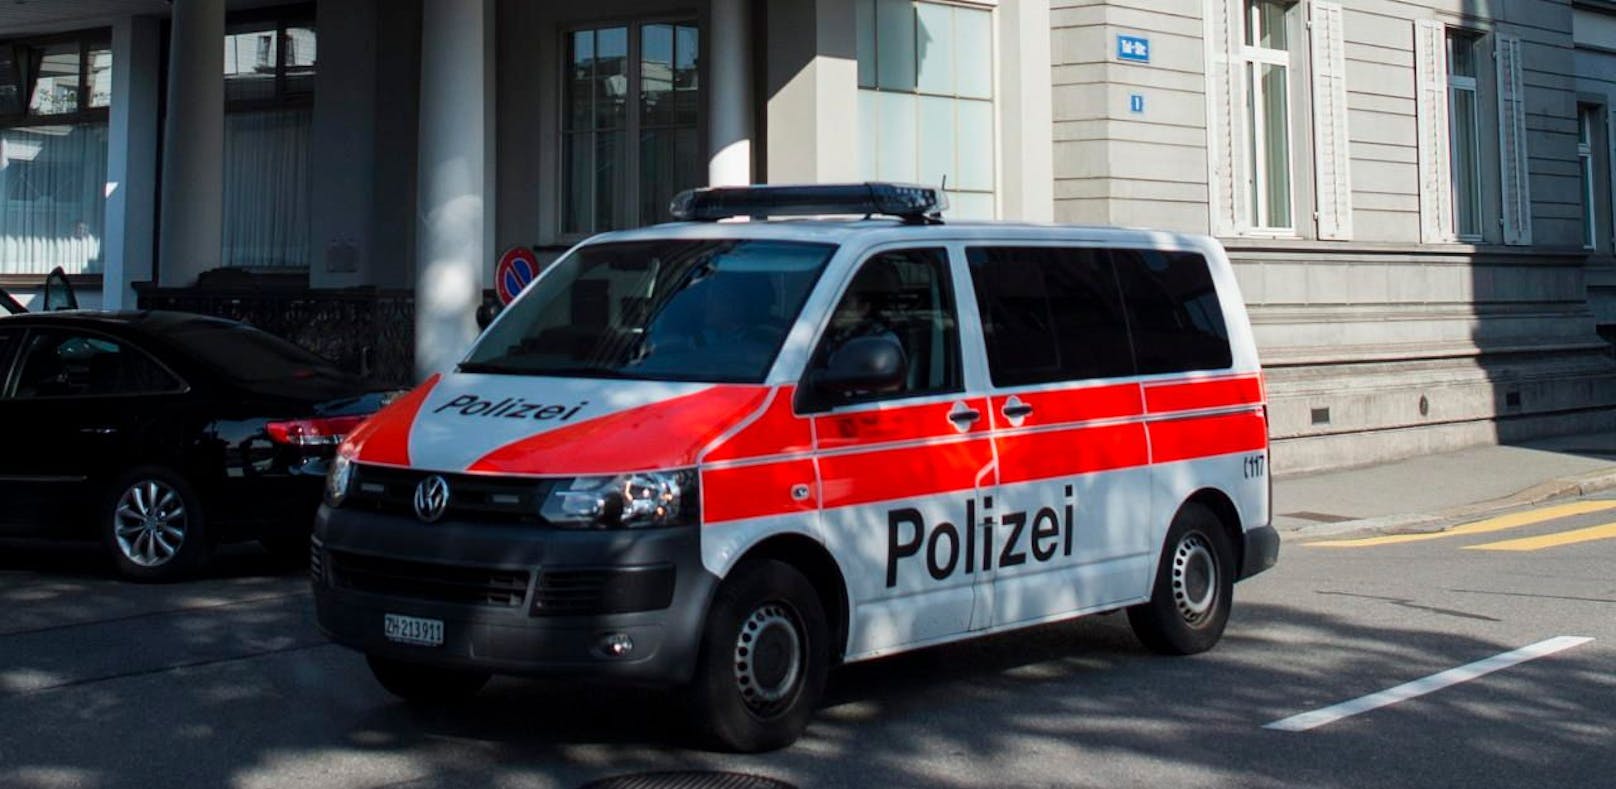 (Symbolbild) Der betrunkene Deutsche wurde vorübergehend von der Züricher Polizei festgenommen.